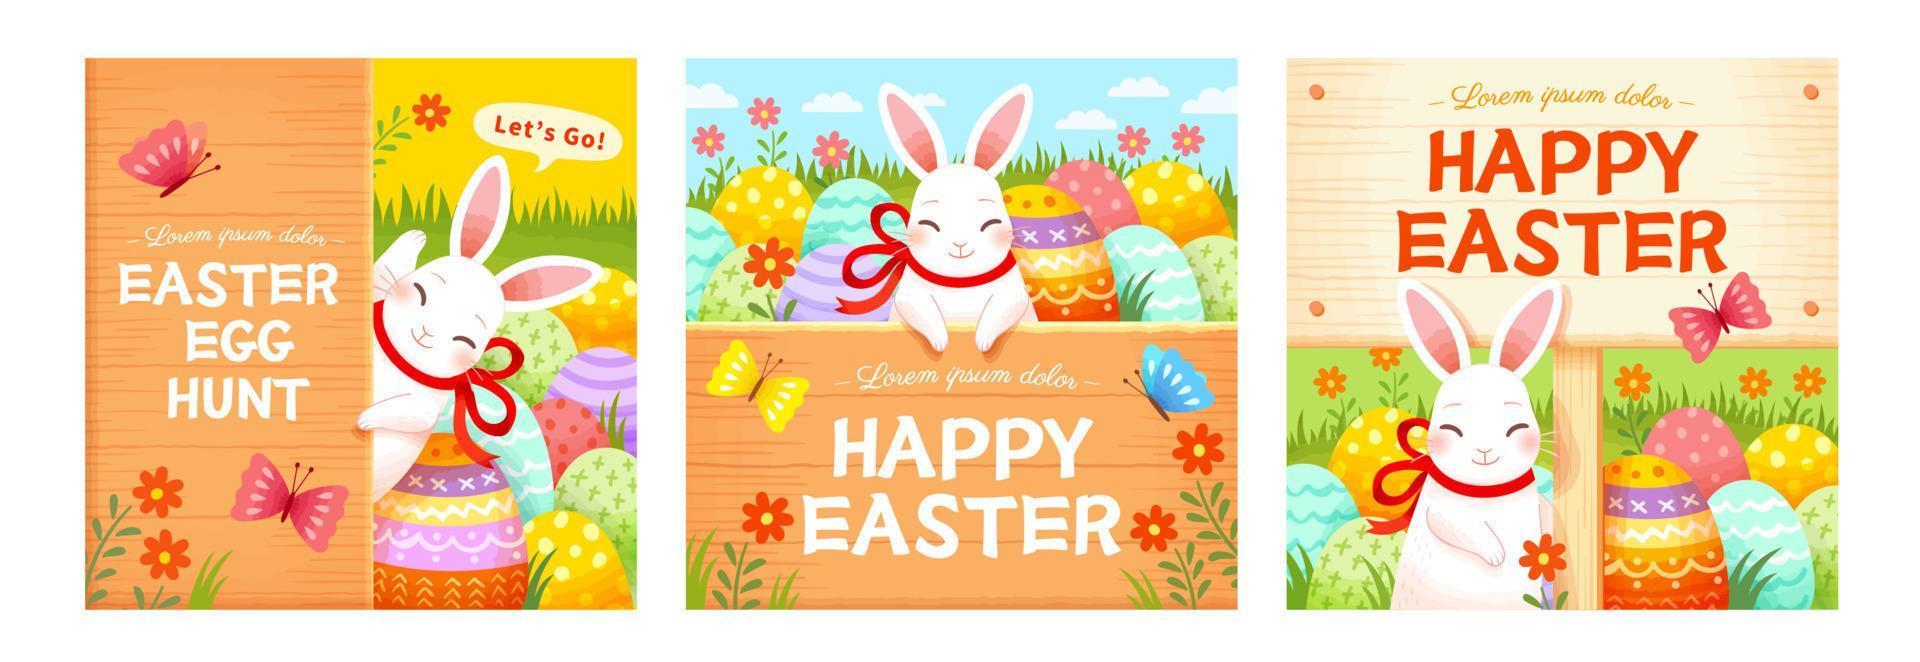 Pasqua modelli con carino conigli, uova e legna tavole. vacanza sfondo adatto per evento invito o saluto carta. vettore